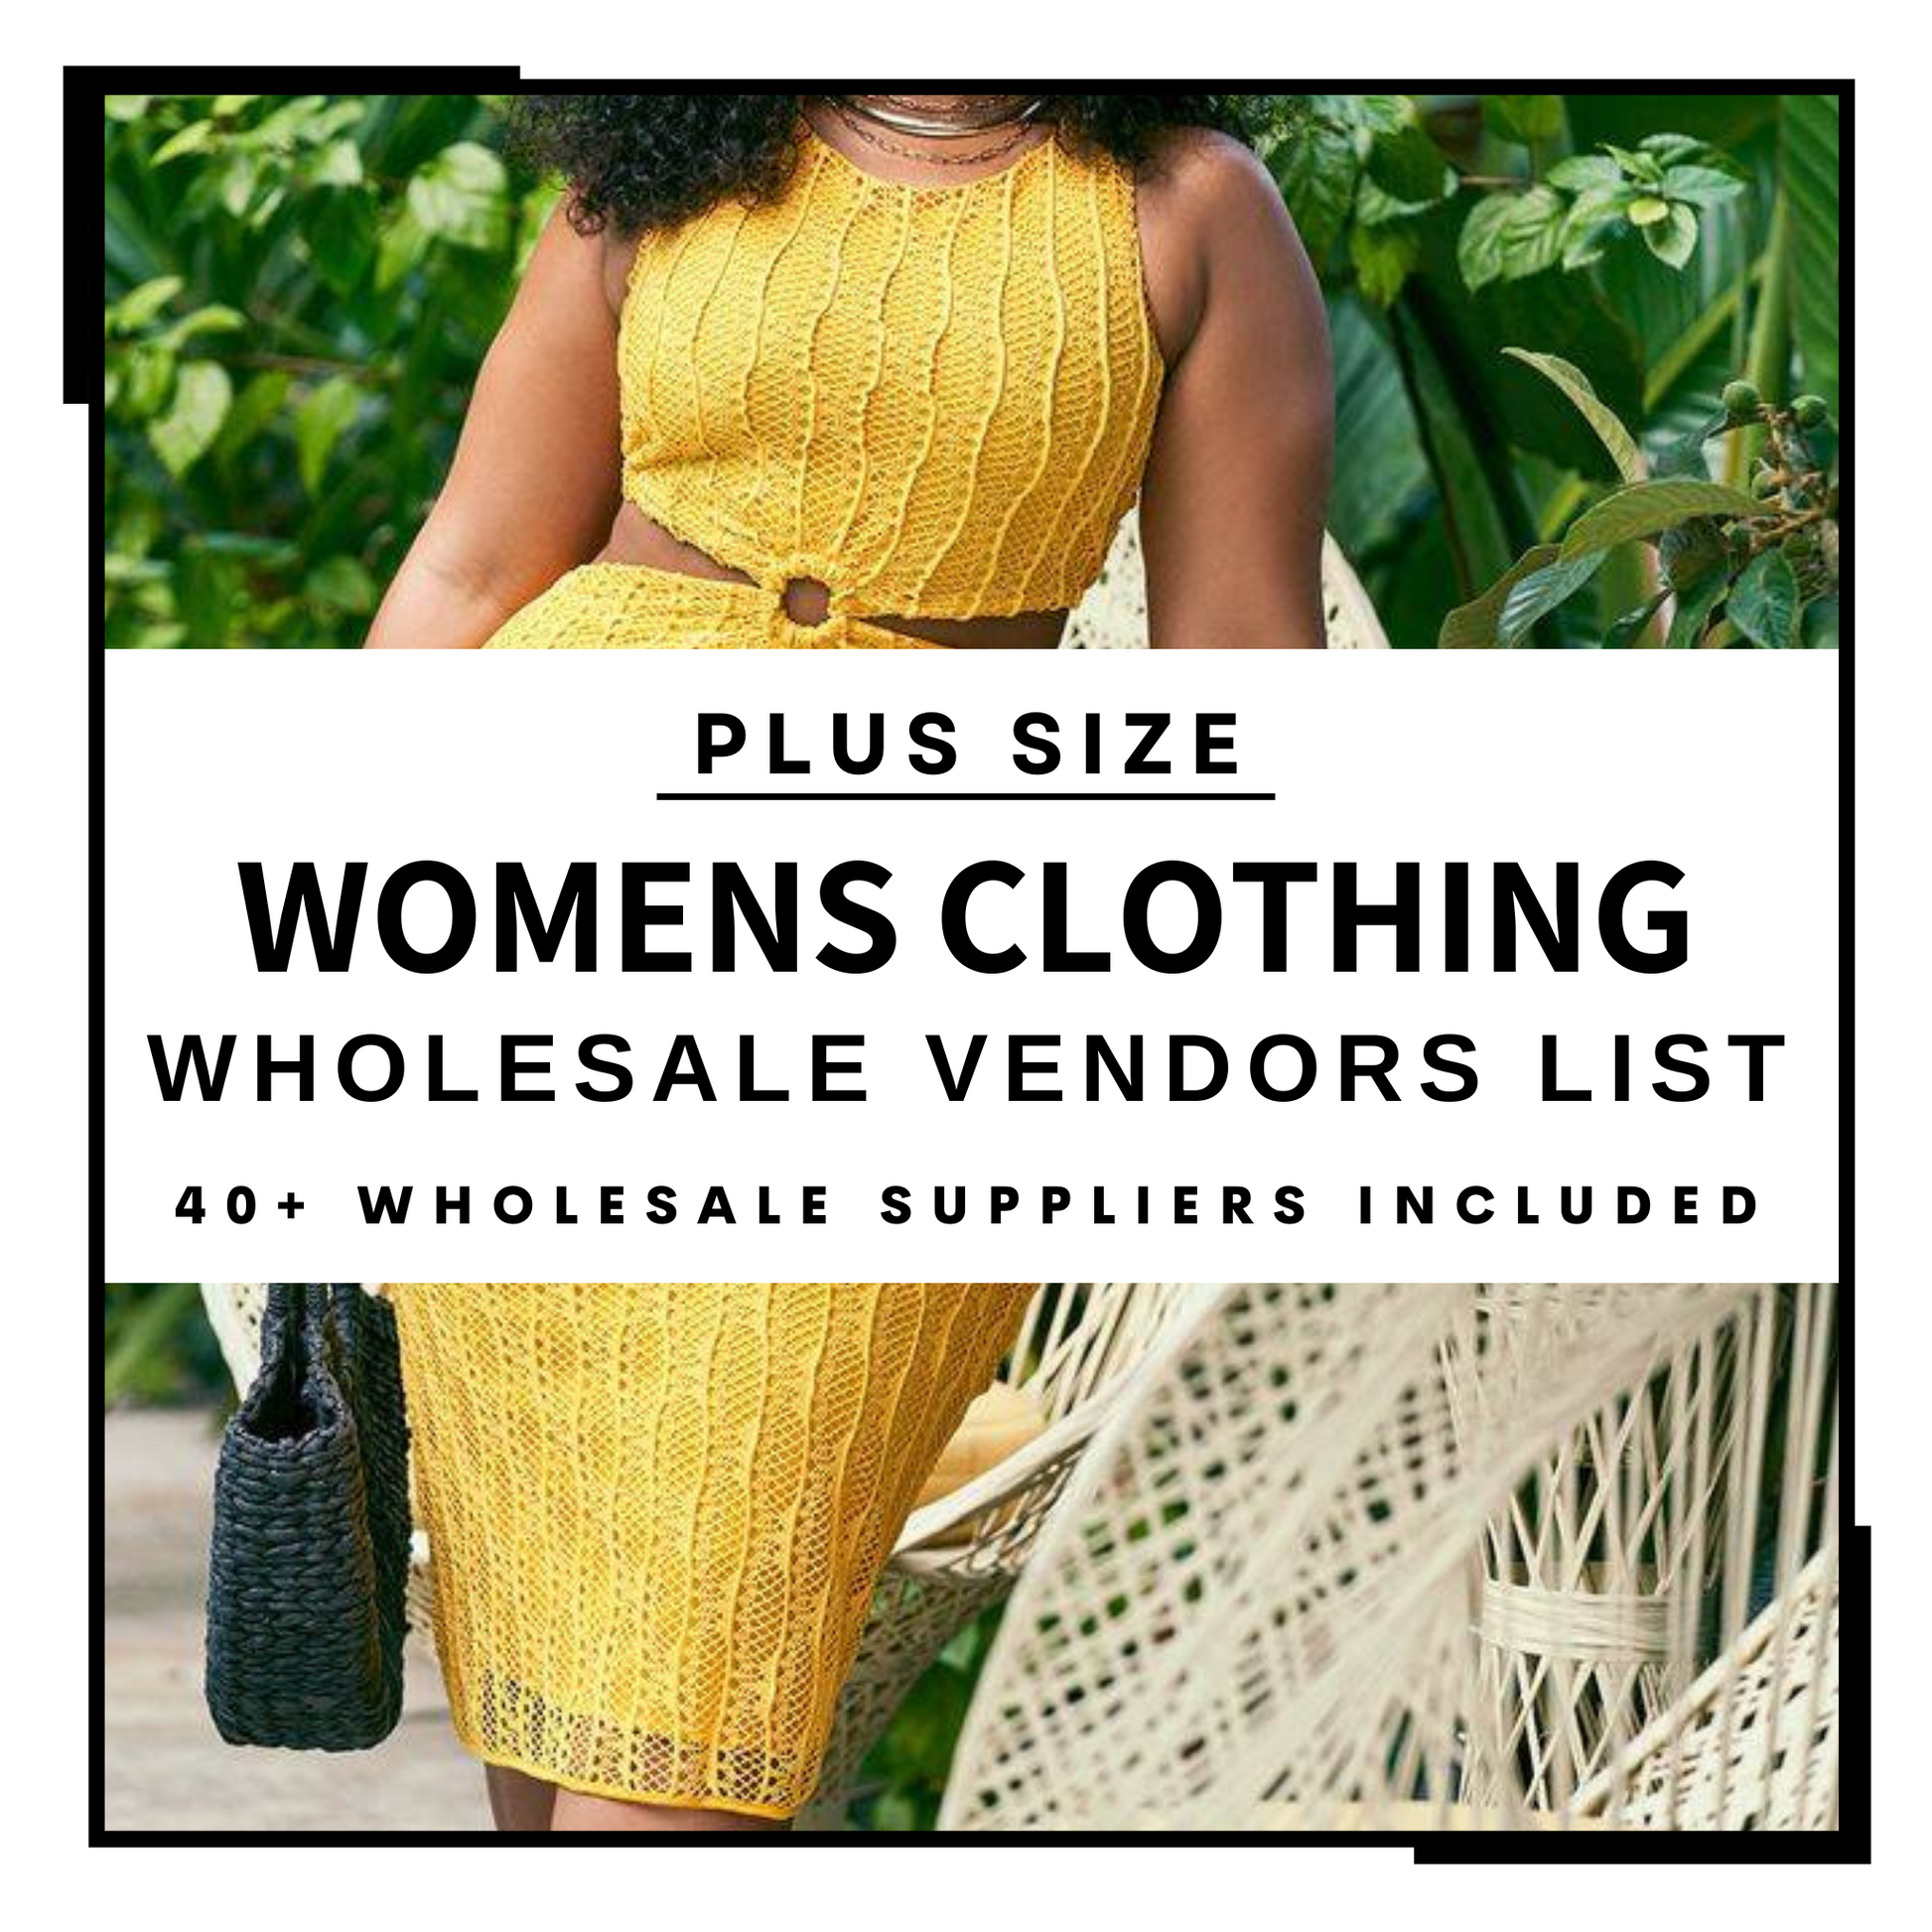 Plus Size Women's Clothing Wholesale Vendors List – Key Wholesale Vendors